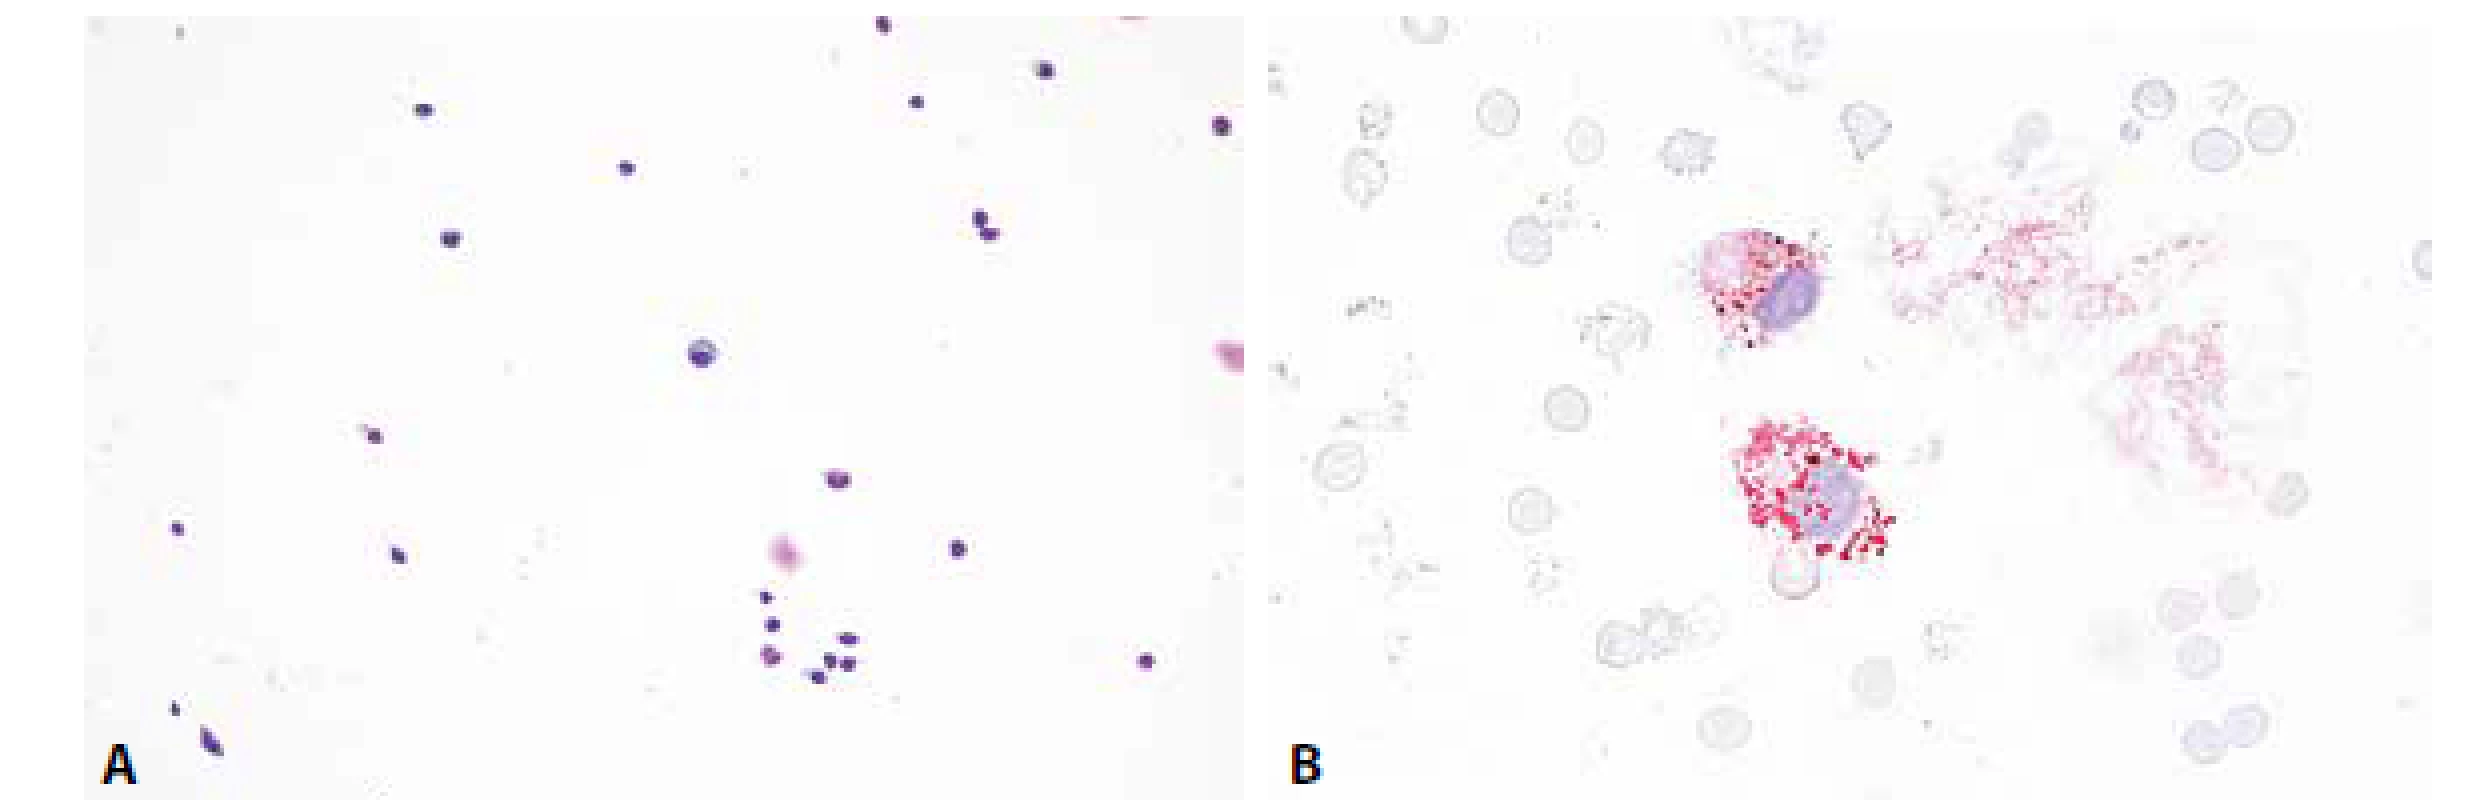 Ilustrační případ 3. Roztroušená skleróza. (A) Mírná lymfocytární pleocytóza, v centru zralá plazmatická buňka. MGG, 200x. (B) Lipofagická
reakce je u RS většinou diskrétní, omezená na akutní fázi onemocnění. Olejová červeň, 400x.